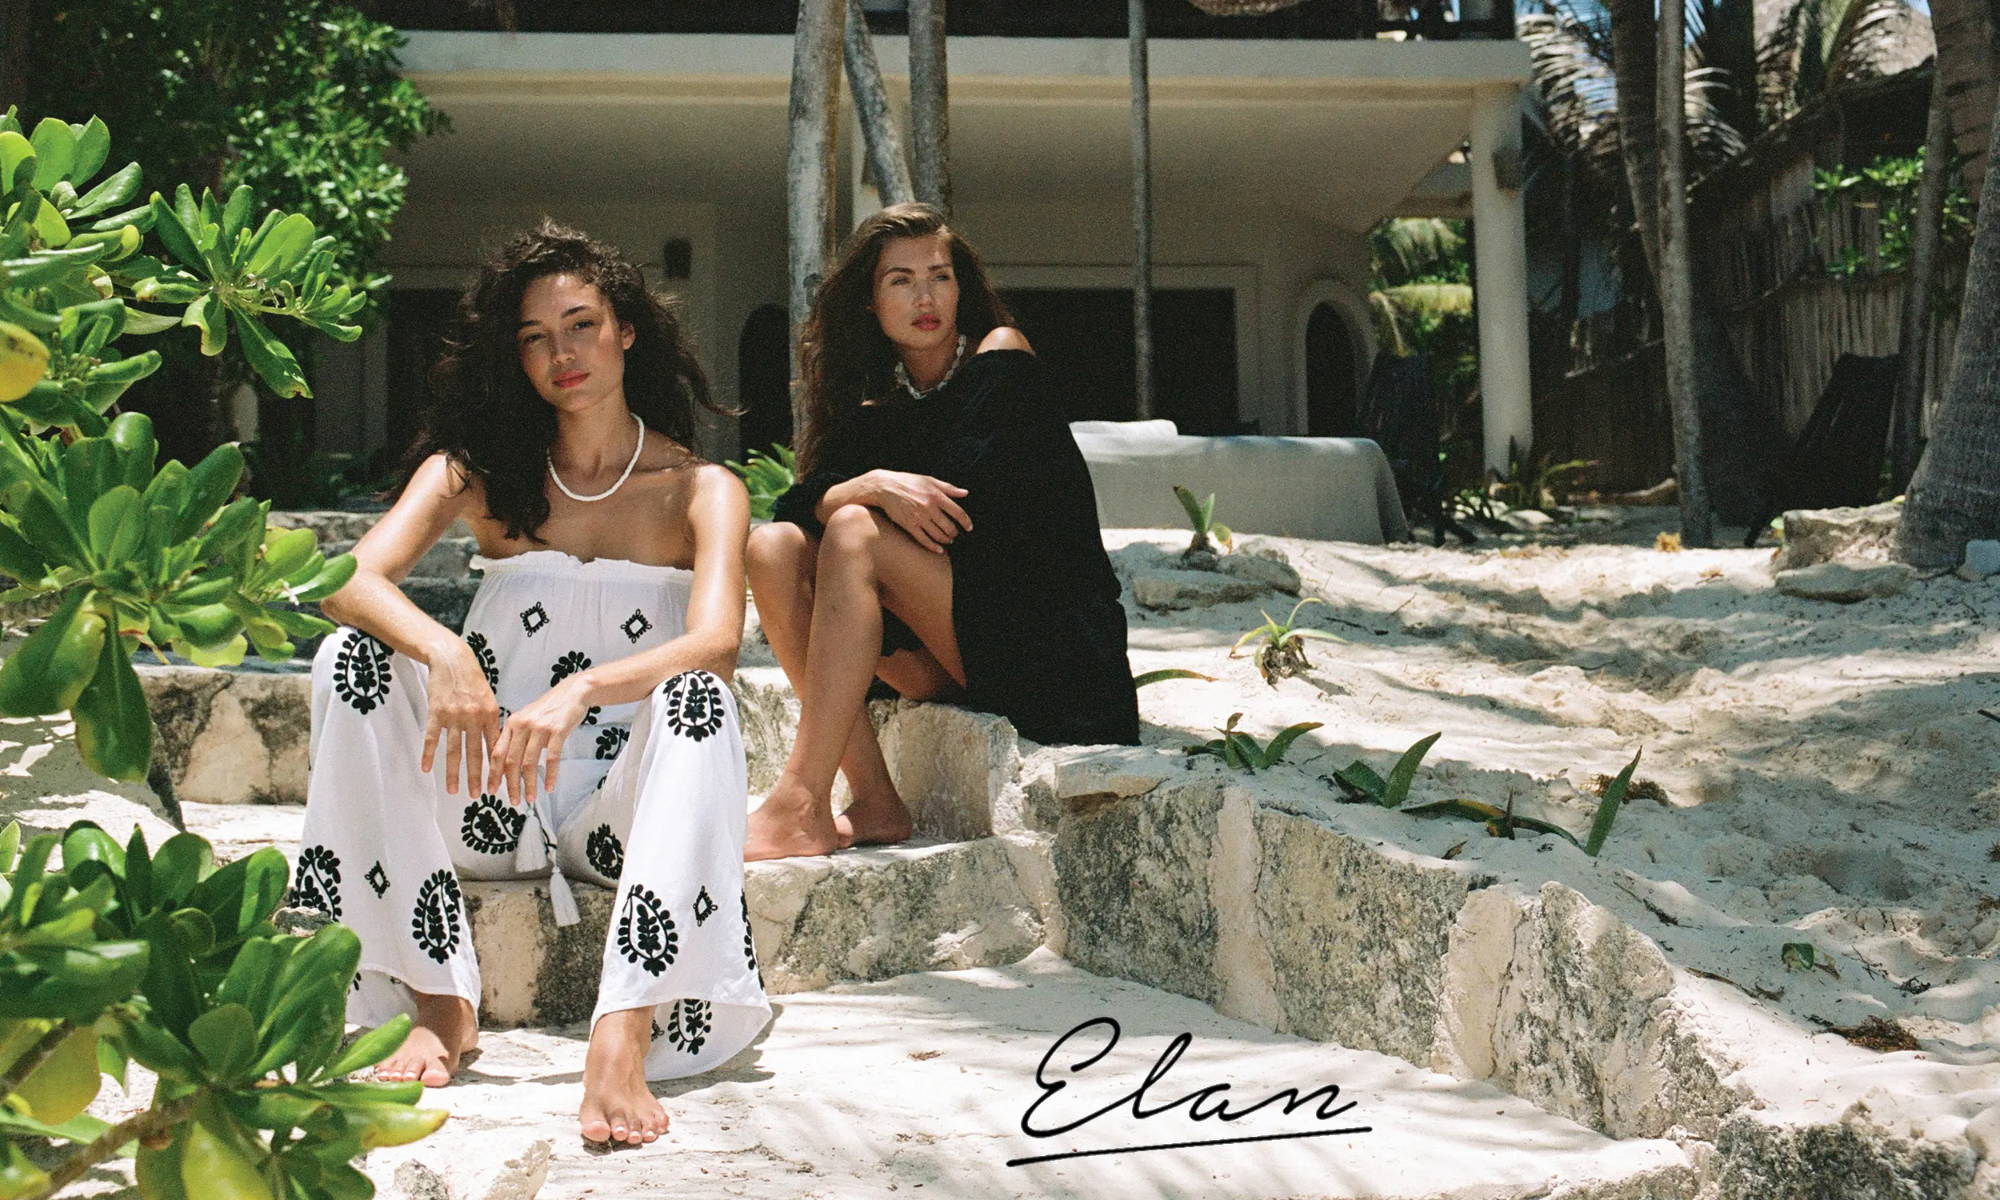 Image of models in Elan clothing